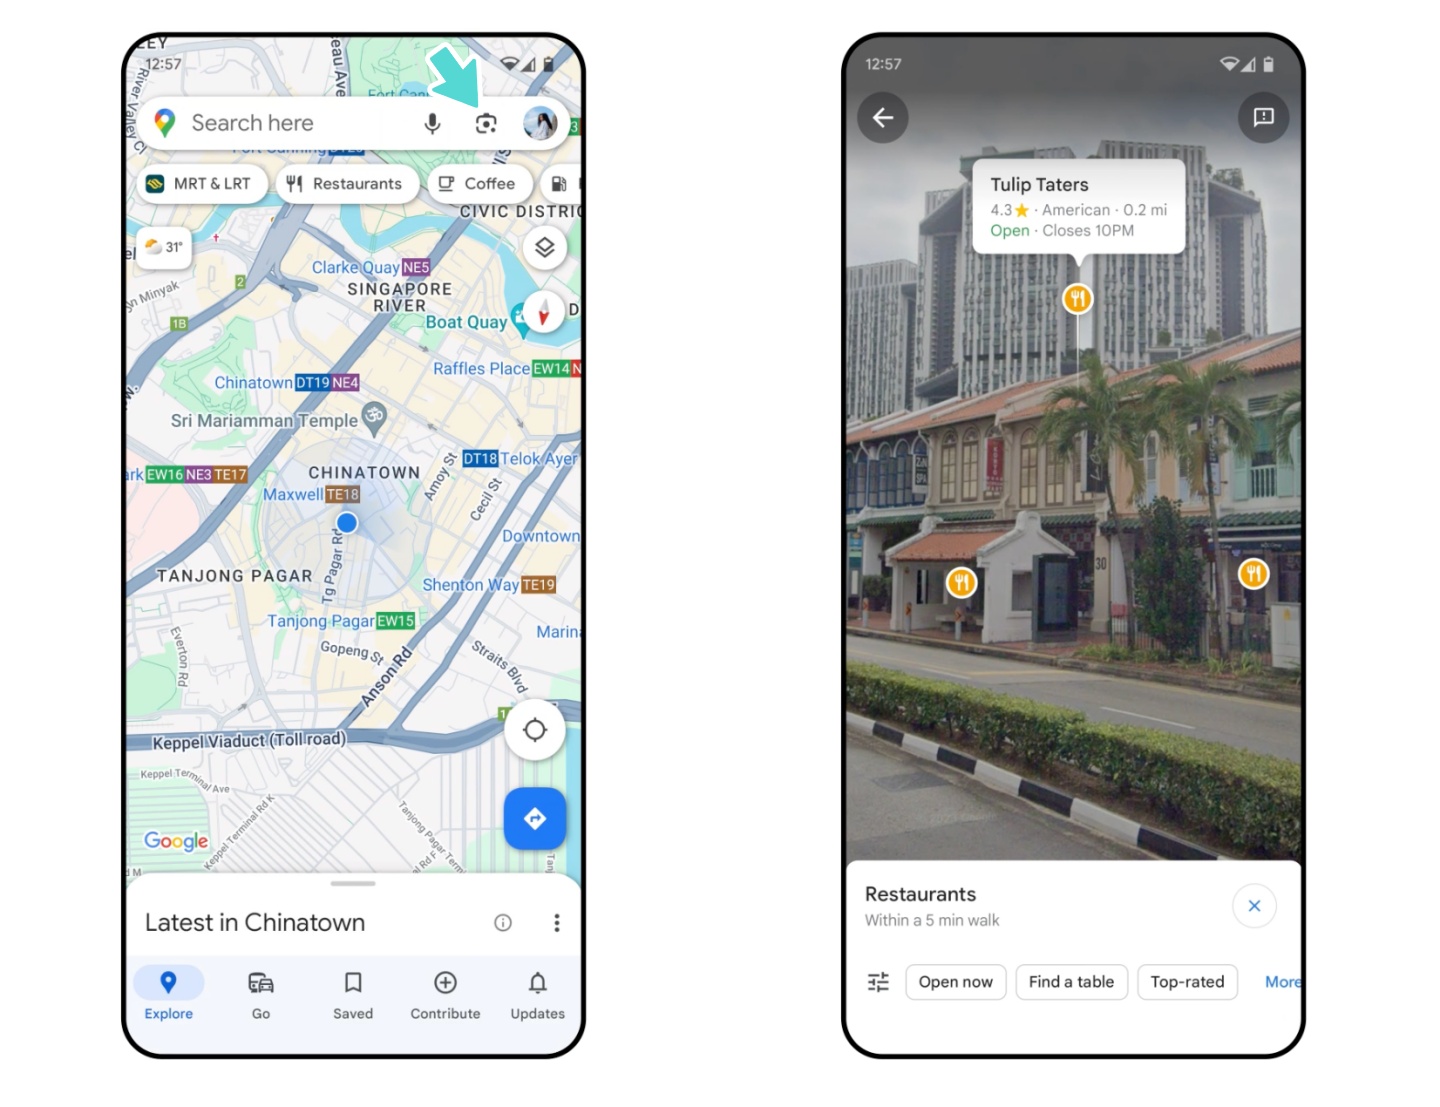 Google Maps 將推出新的『 AR 導航 』！快速搜尋『 電動車充電站 』實用功能也上線